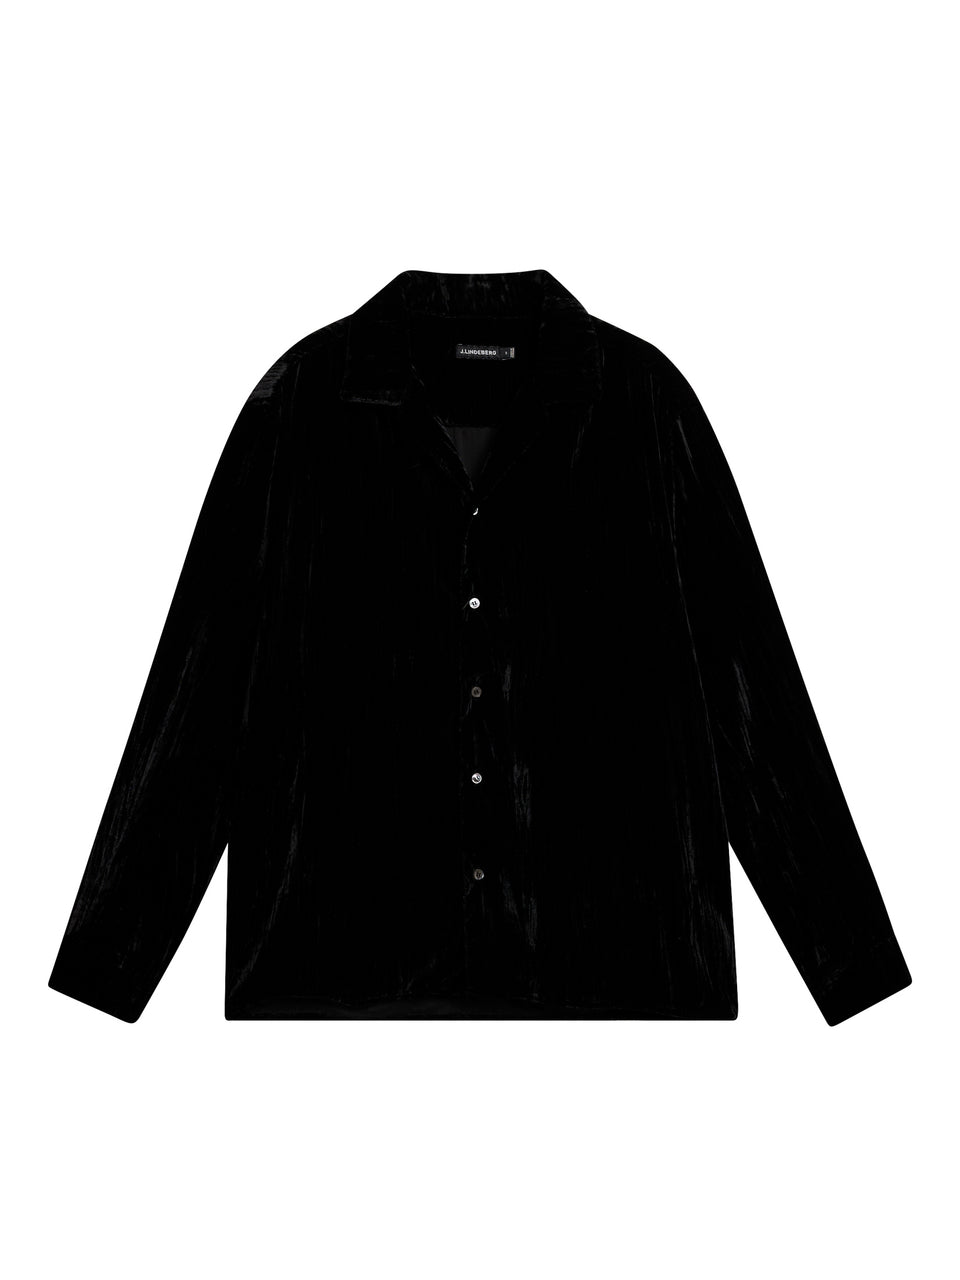 PJ Velvet Shirt / Black